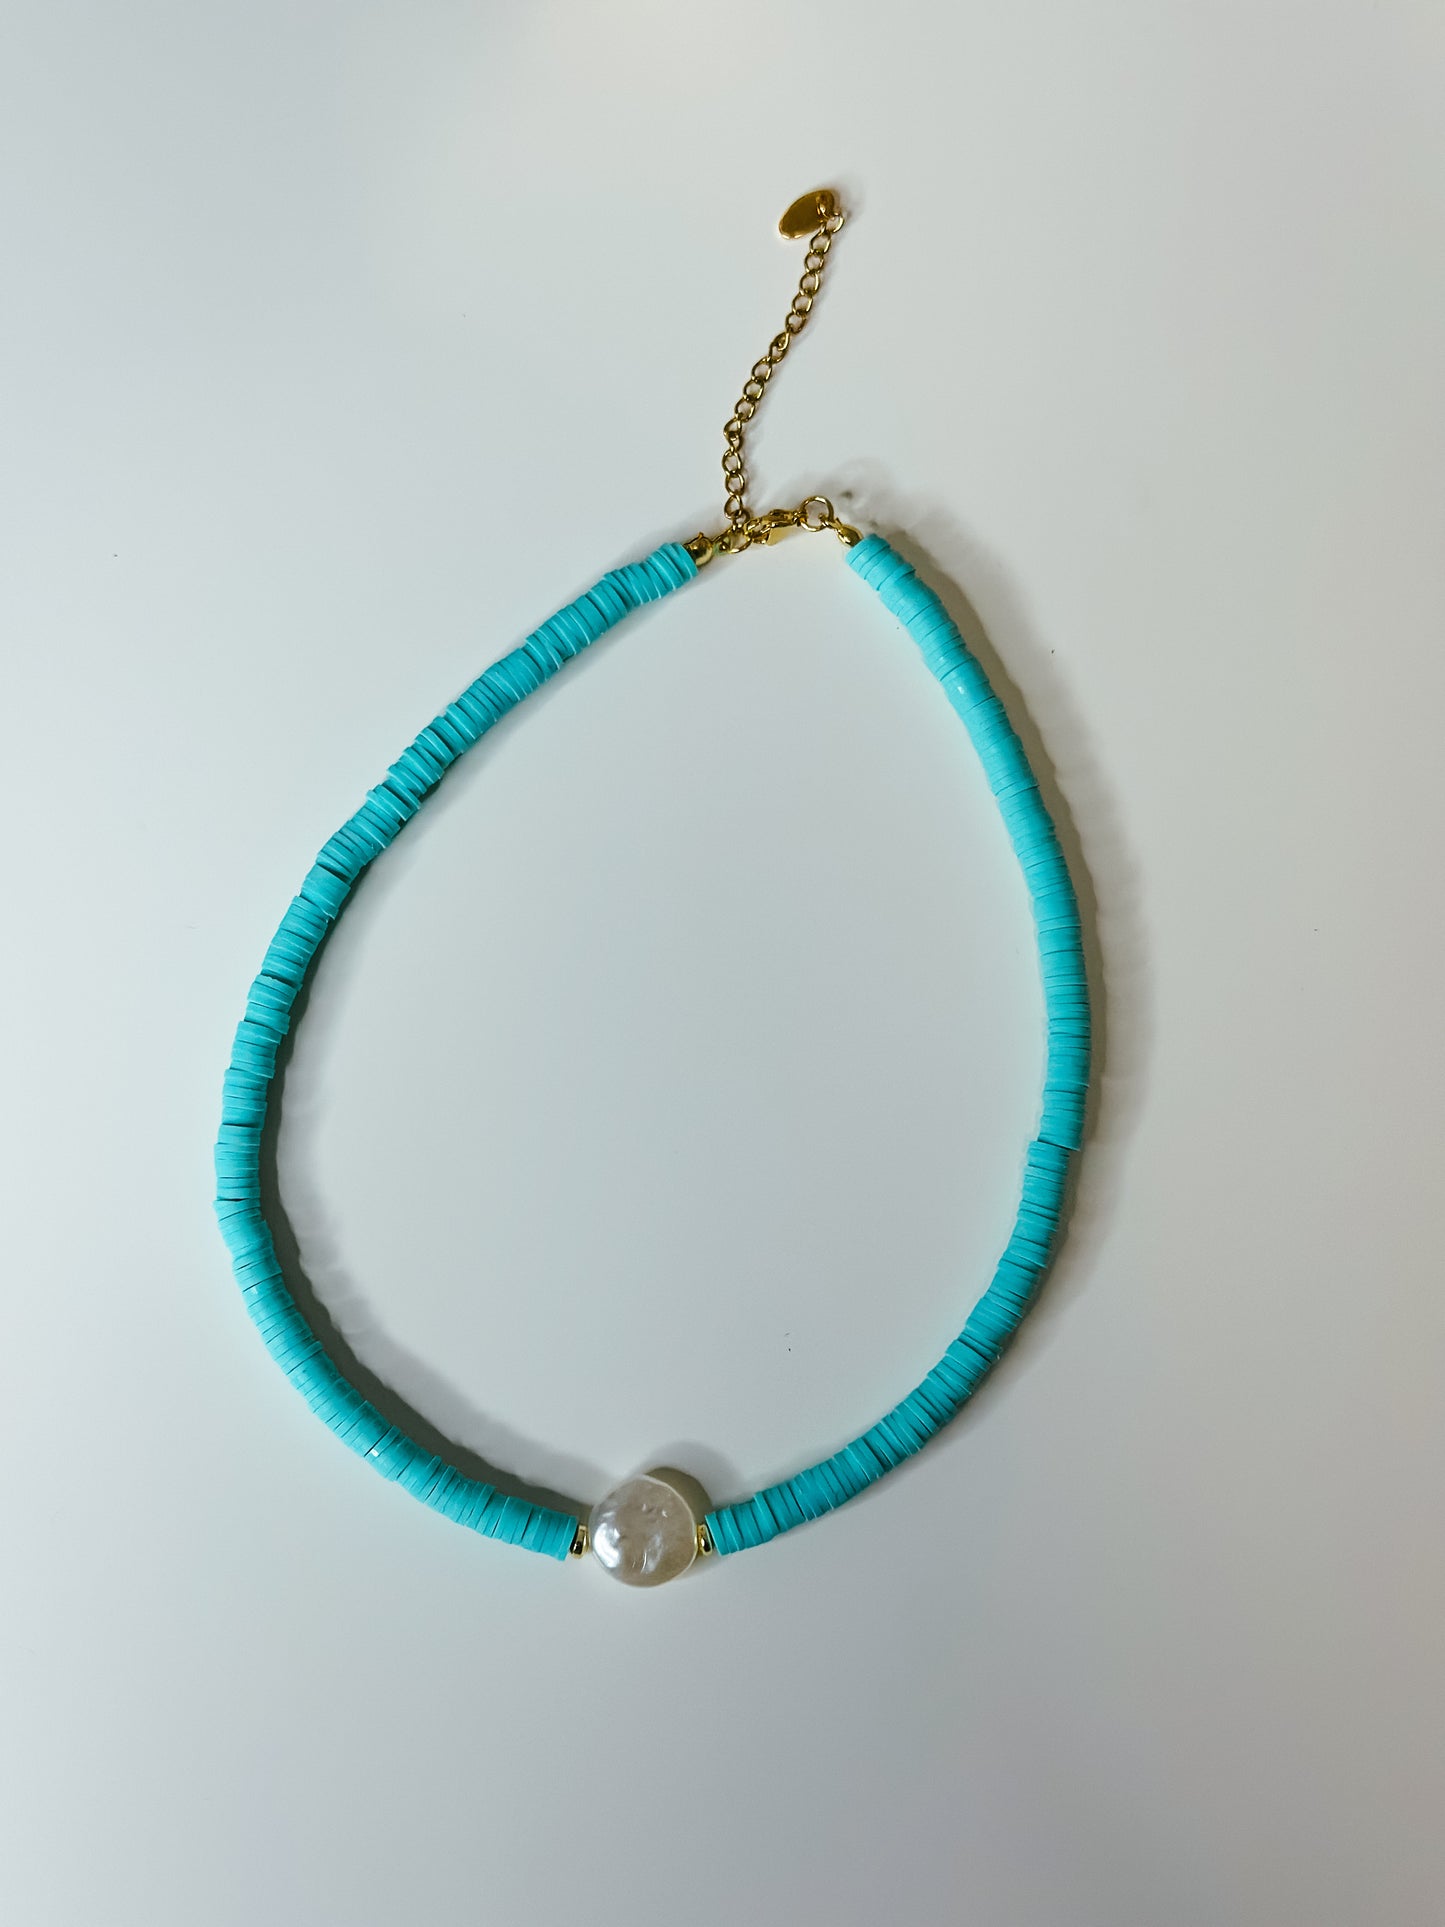 Aqua necklace